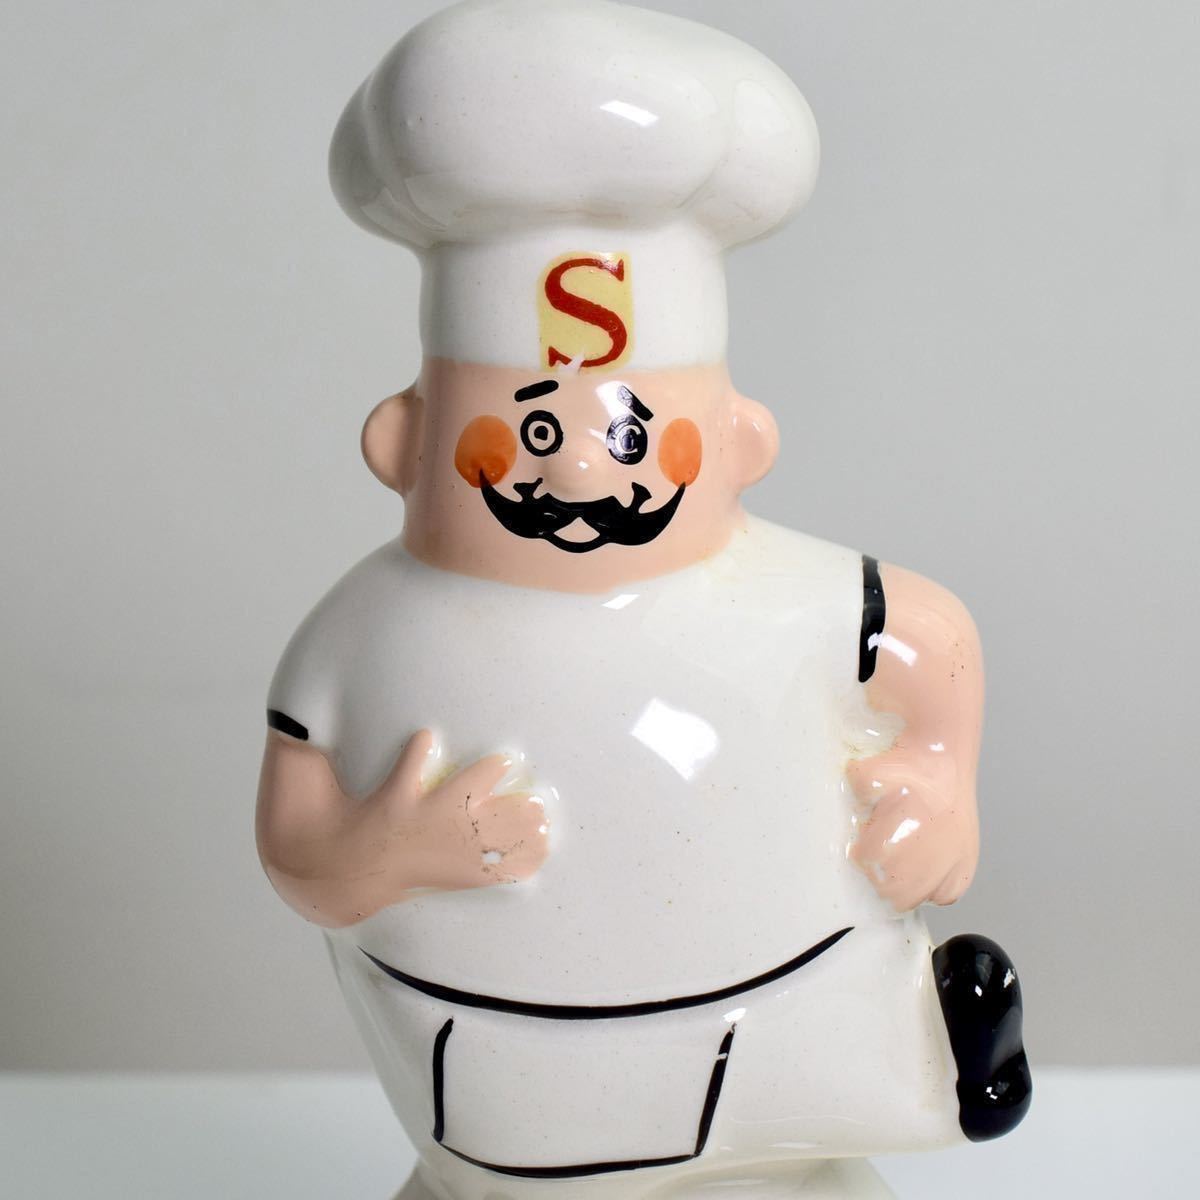 シェーキーズ シェフ ピザ SHAKEY'S Chef 陶器製 貯金箱 フィギュア アドバタイジング キャラクター 企業物 ビンテージ 70s